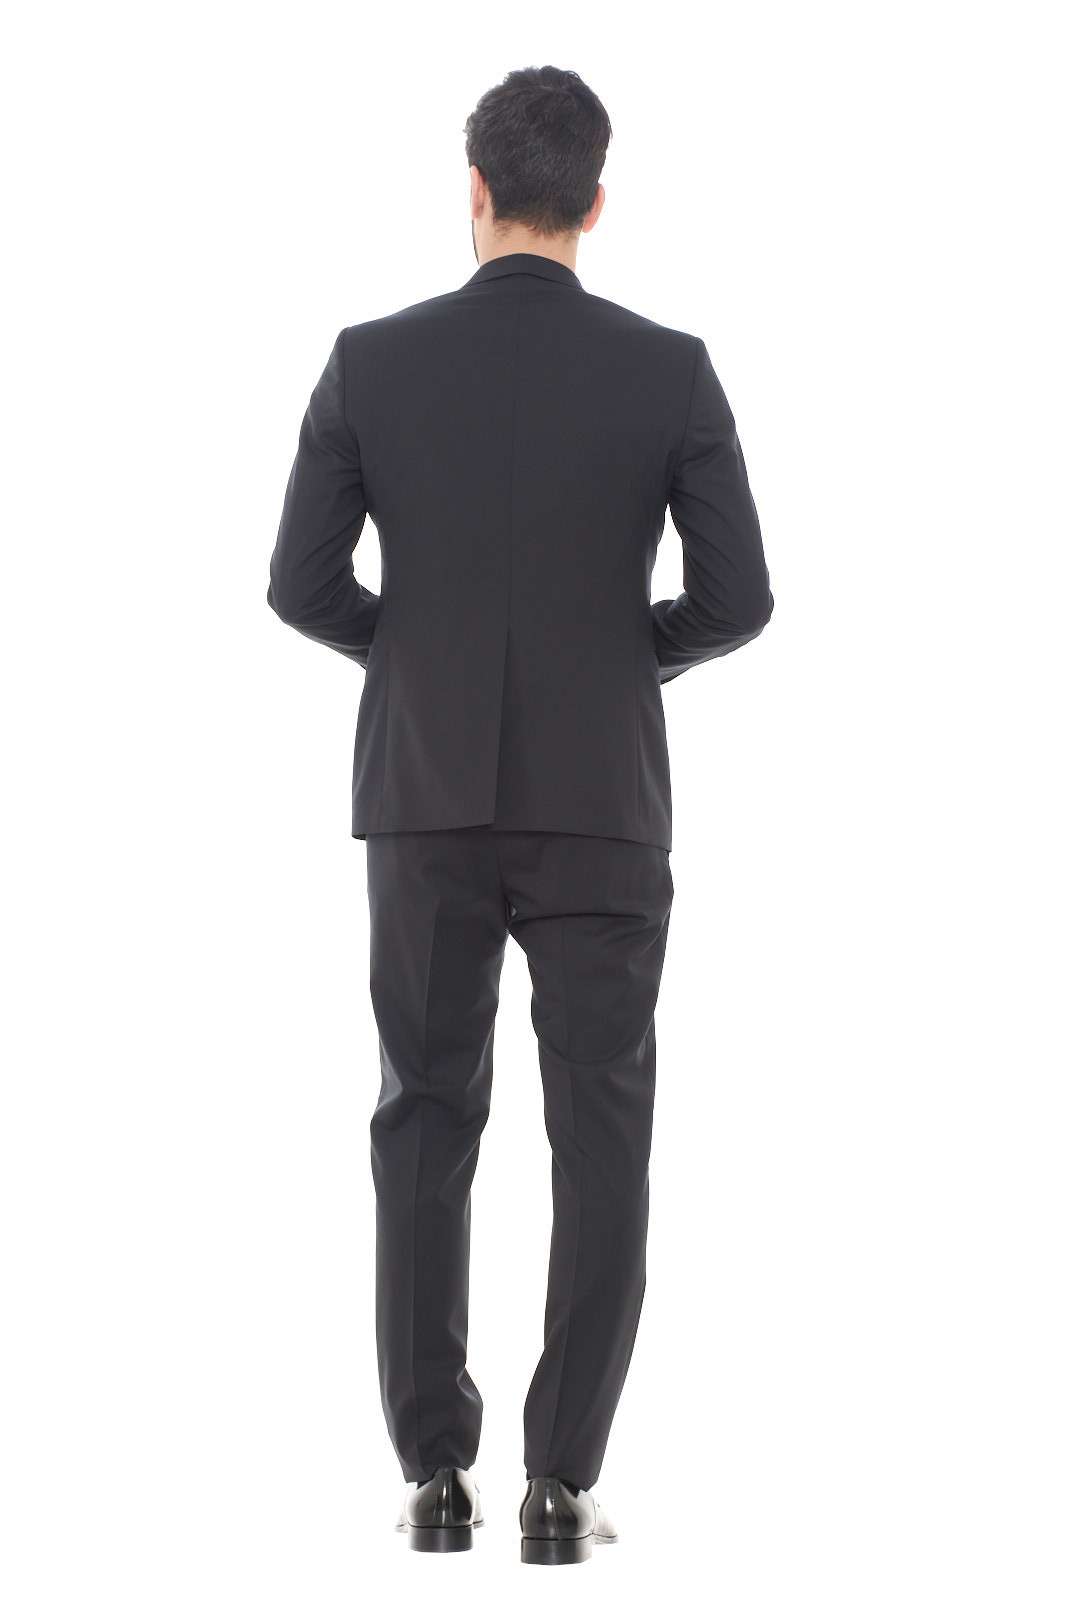 Tagliatore men's tuxedo suit in fresh wool